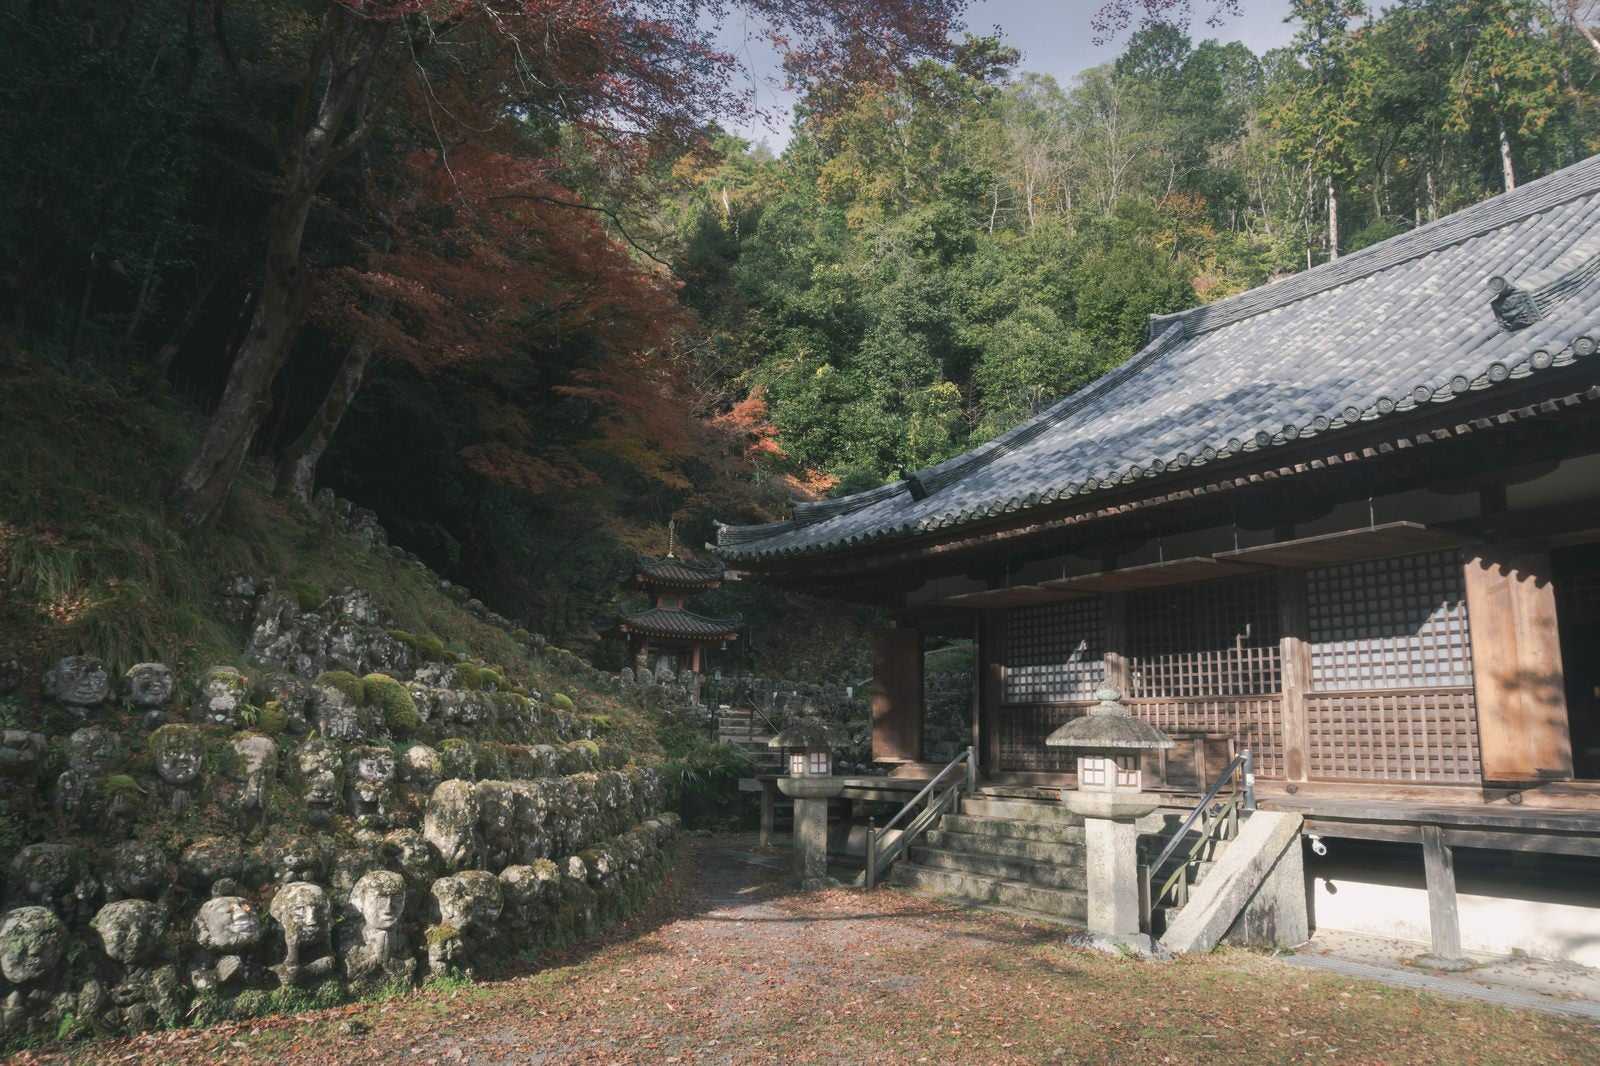 「愛宕念仏寺本堂とその奥の紅葉の下に見える多宝塔」の写真